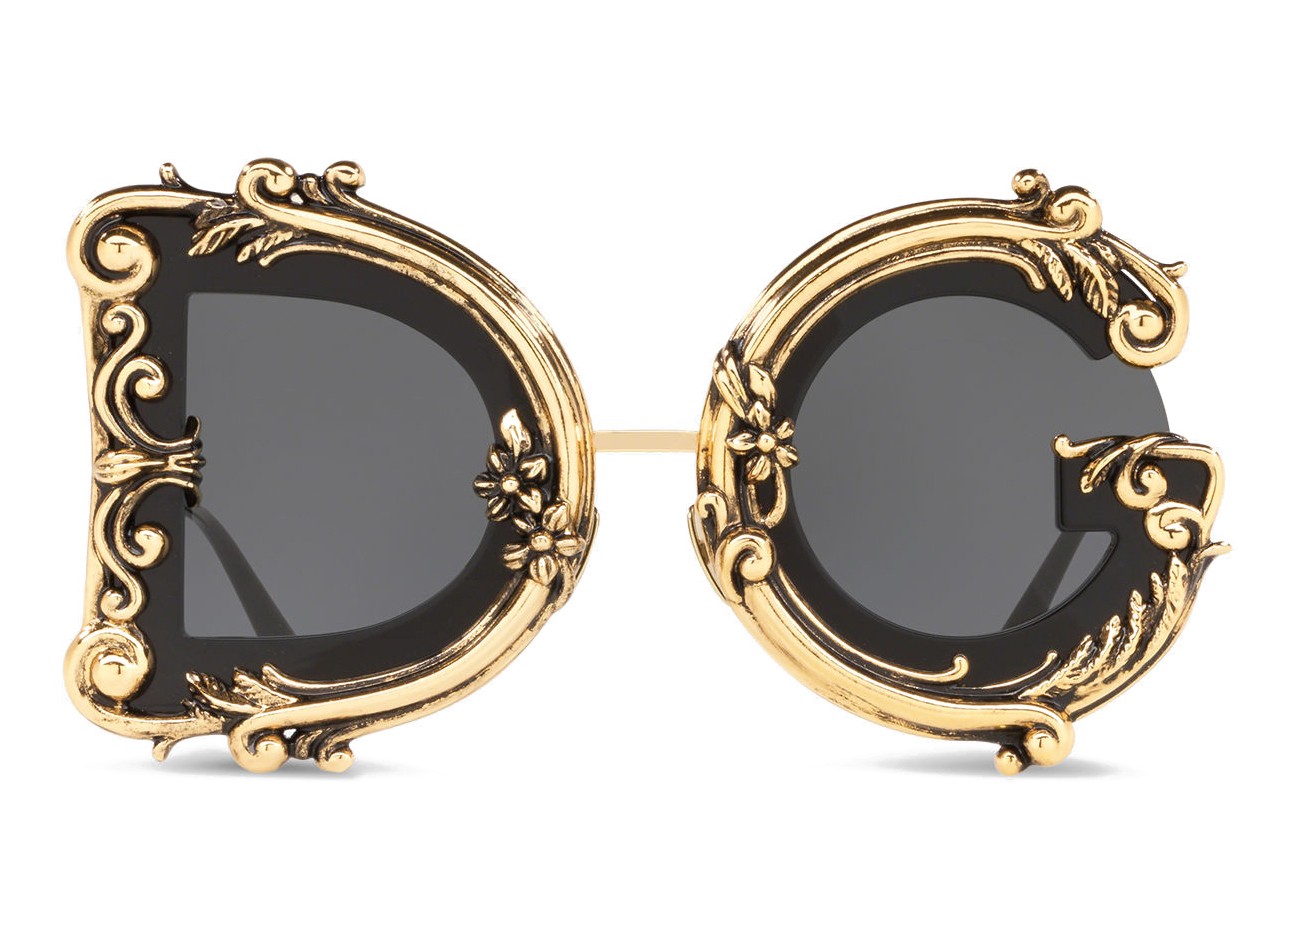 Dolce & Gabbana - Devotion Sunglasses - Black & Gold - Dolce & Gabbana  Eyewear - Avvenice